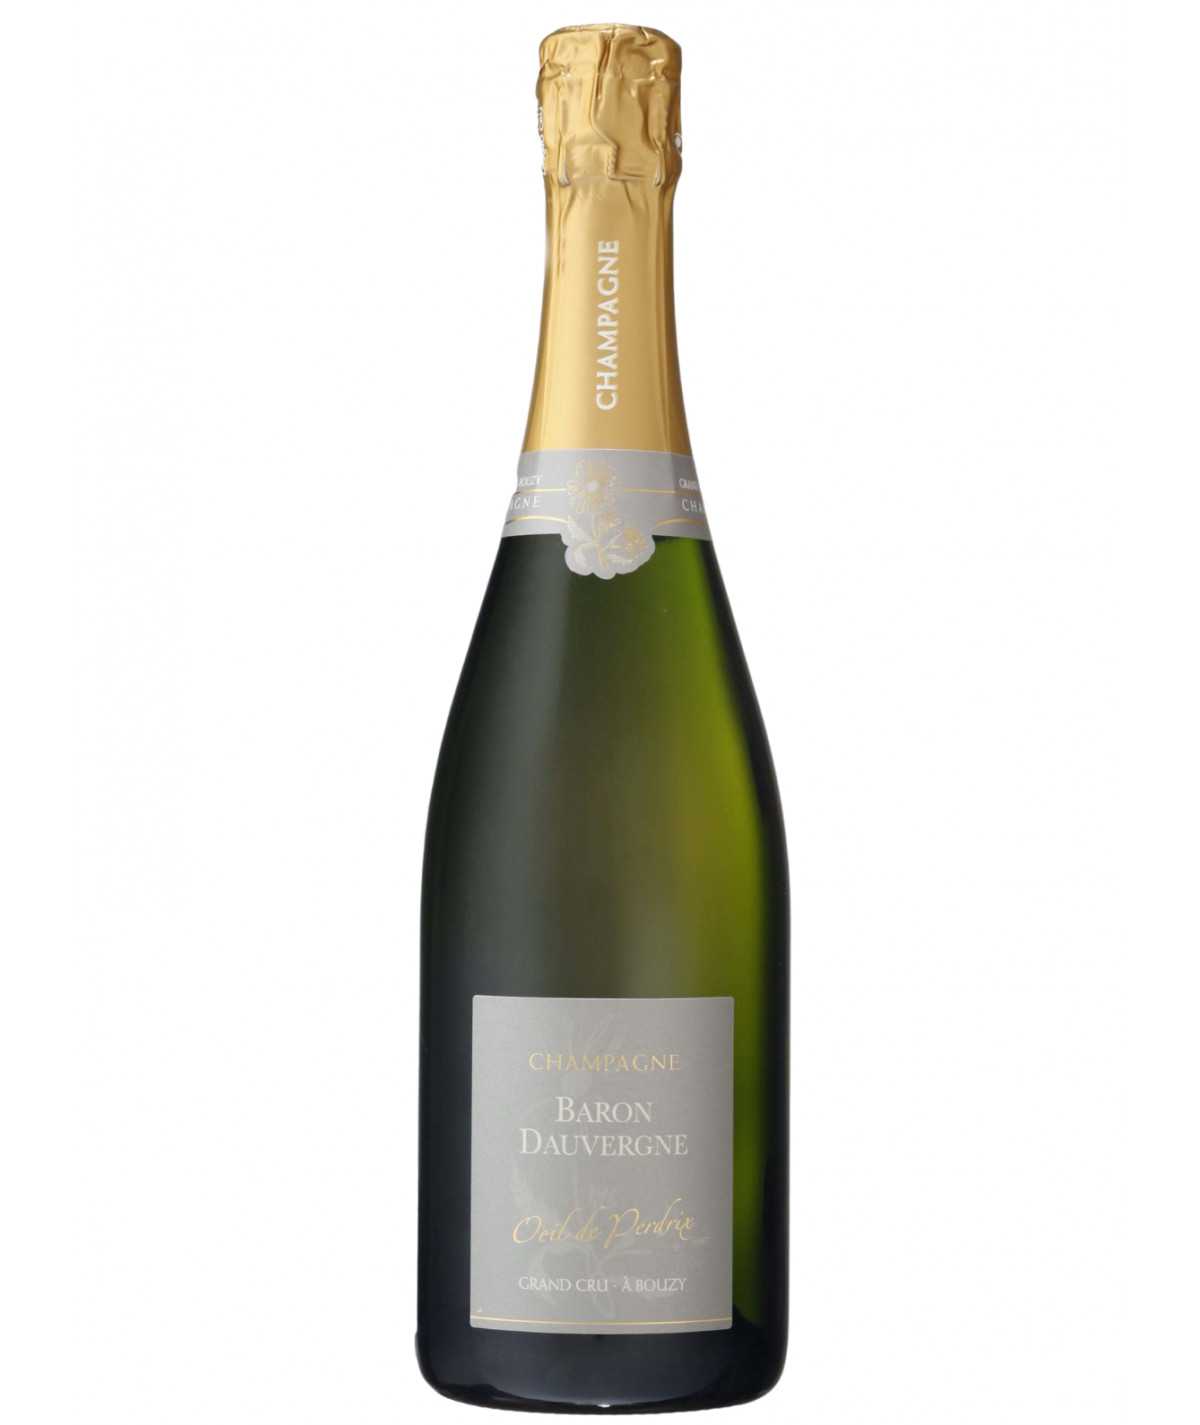 BARON DAUVERGNE Champagne Oeil De Perdrix